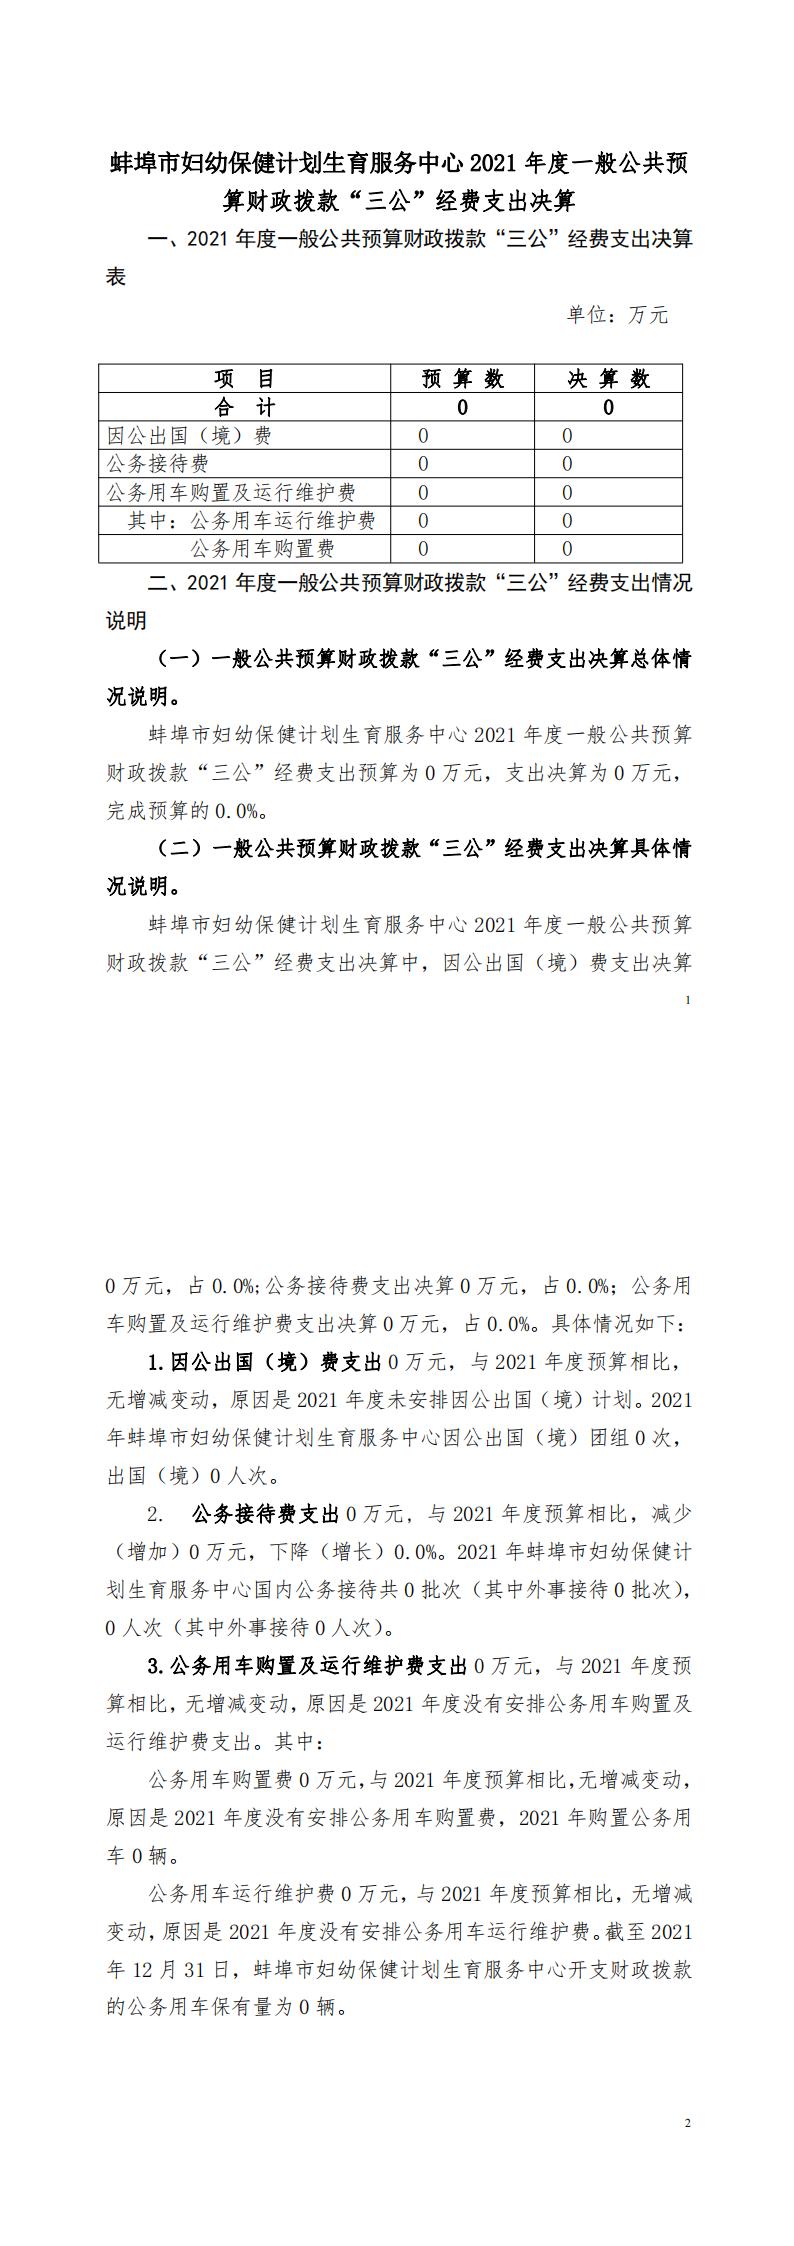 蚌埠市妇幼保健计划生育服务中心2021年度一般公共预算财政拨款“三公”经费支出决算(新改）_00.jpg